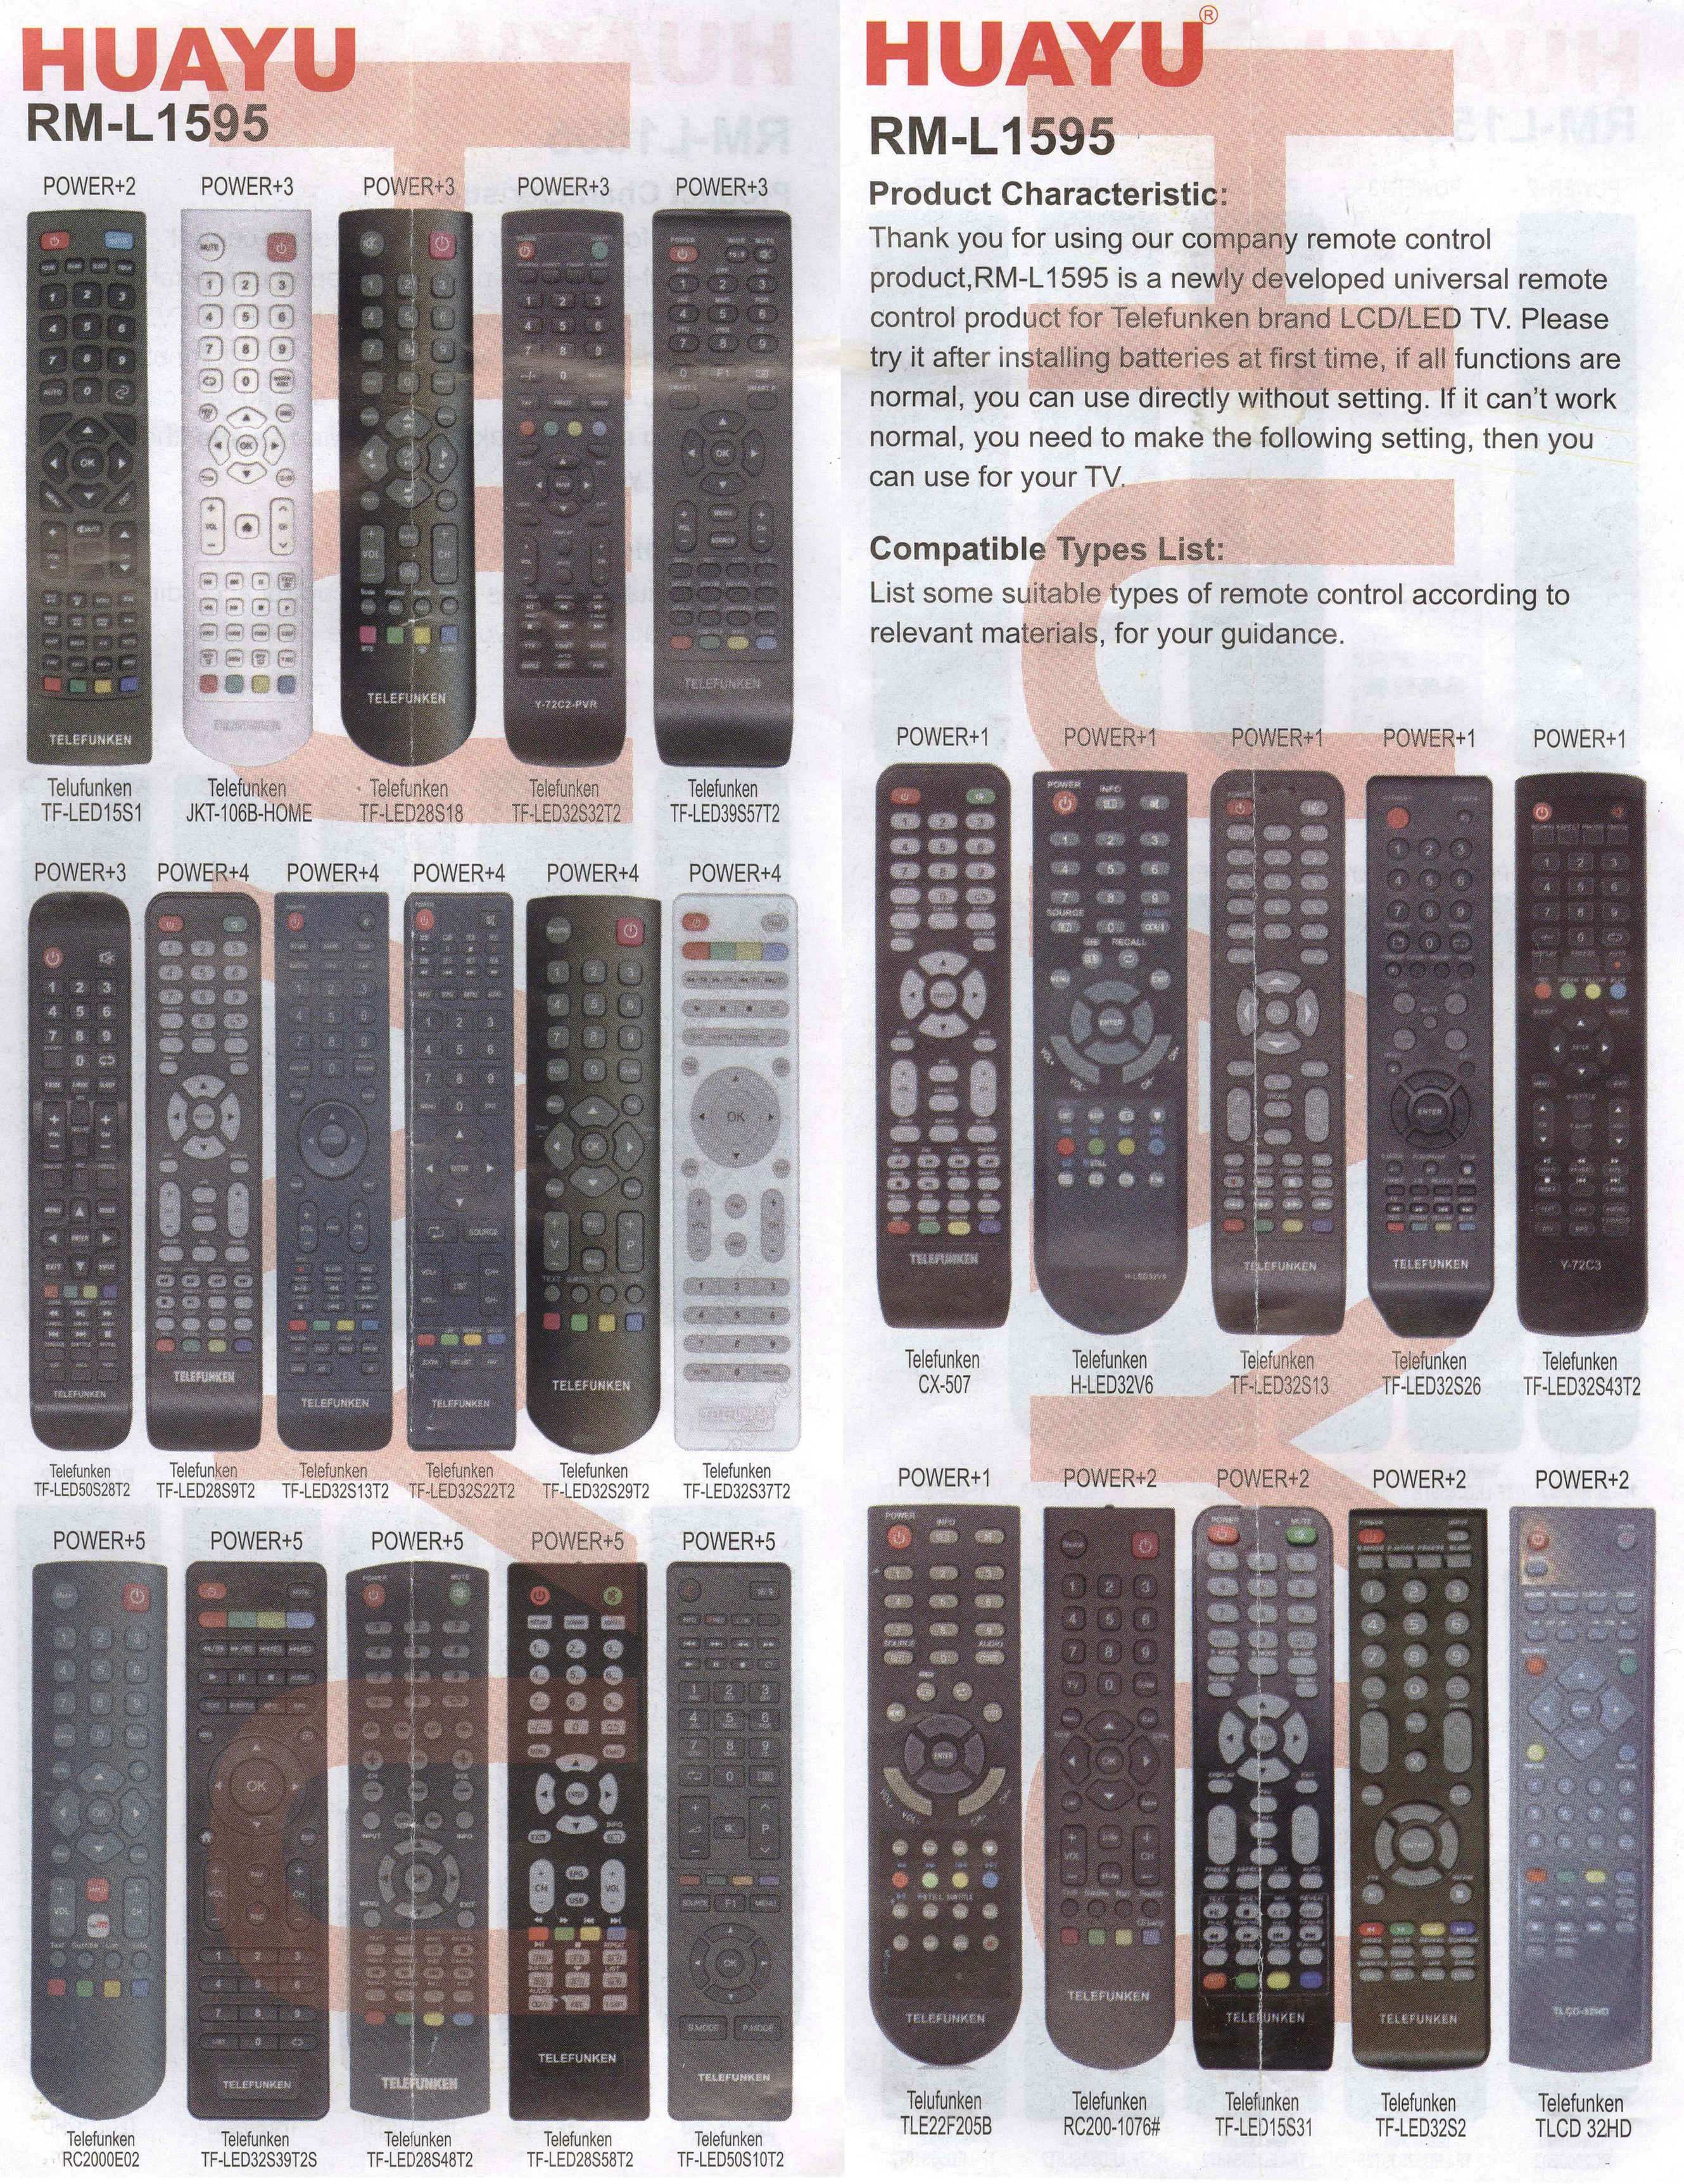 Код телевизора lg для универсального. Пульт универсальный RM-L Huayu (для LG). Пульт Huayu RM-l1335. Пульт Huayu для телевизора Телефункен. Универсальный пульт Huayu RM-l1130+x кнопка для Supra.